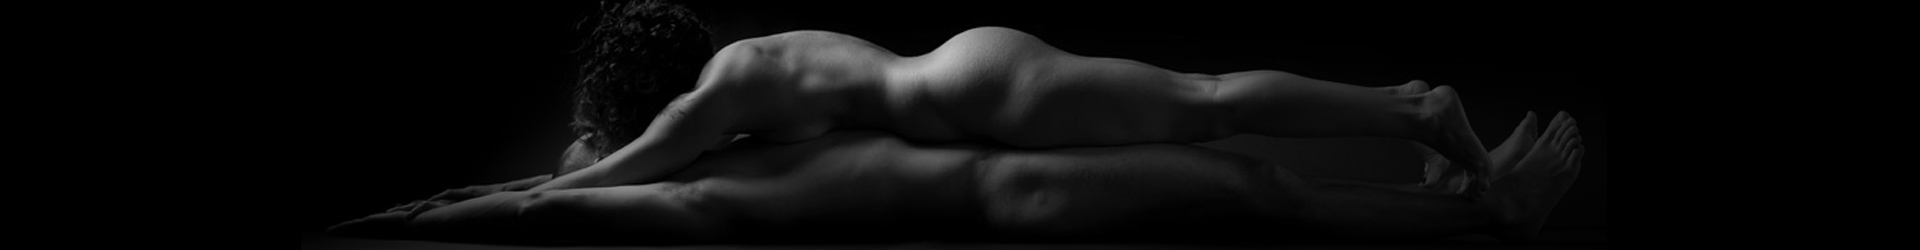 masaje tantra sensual erótico gran canaria